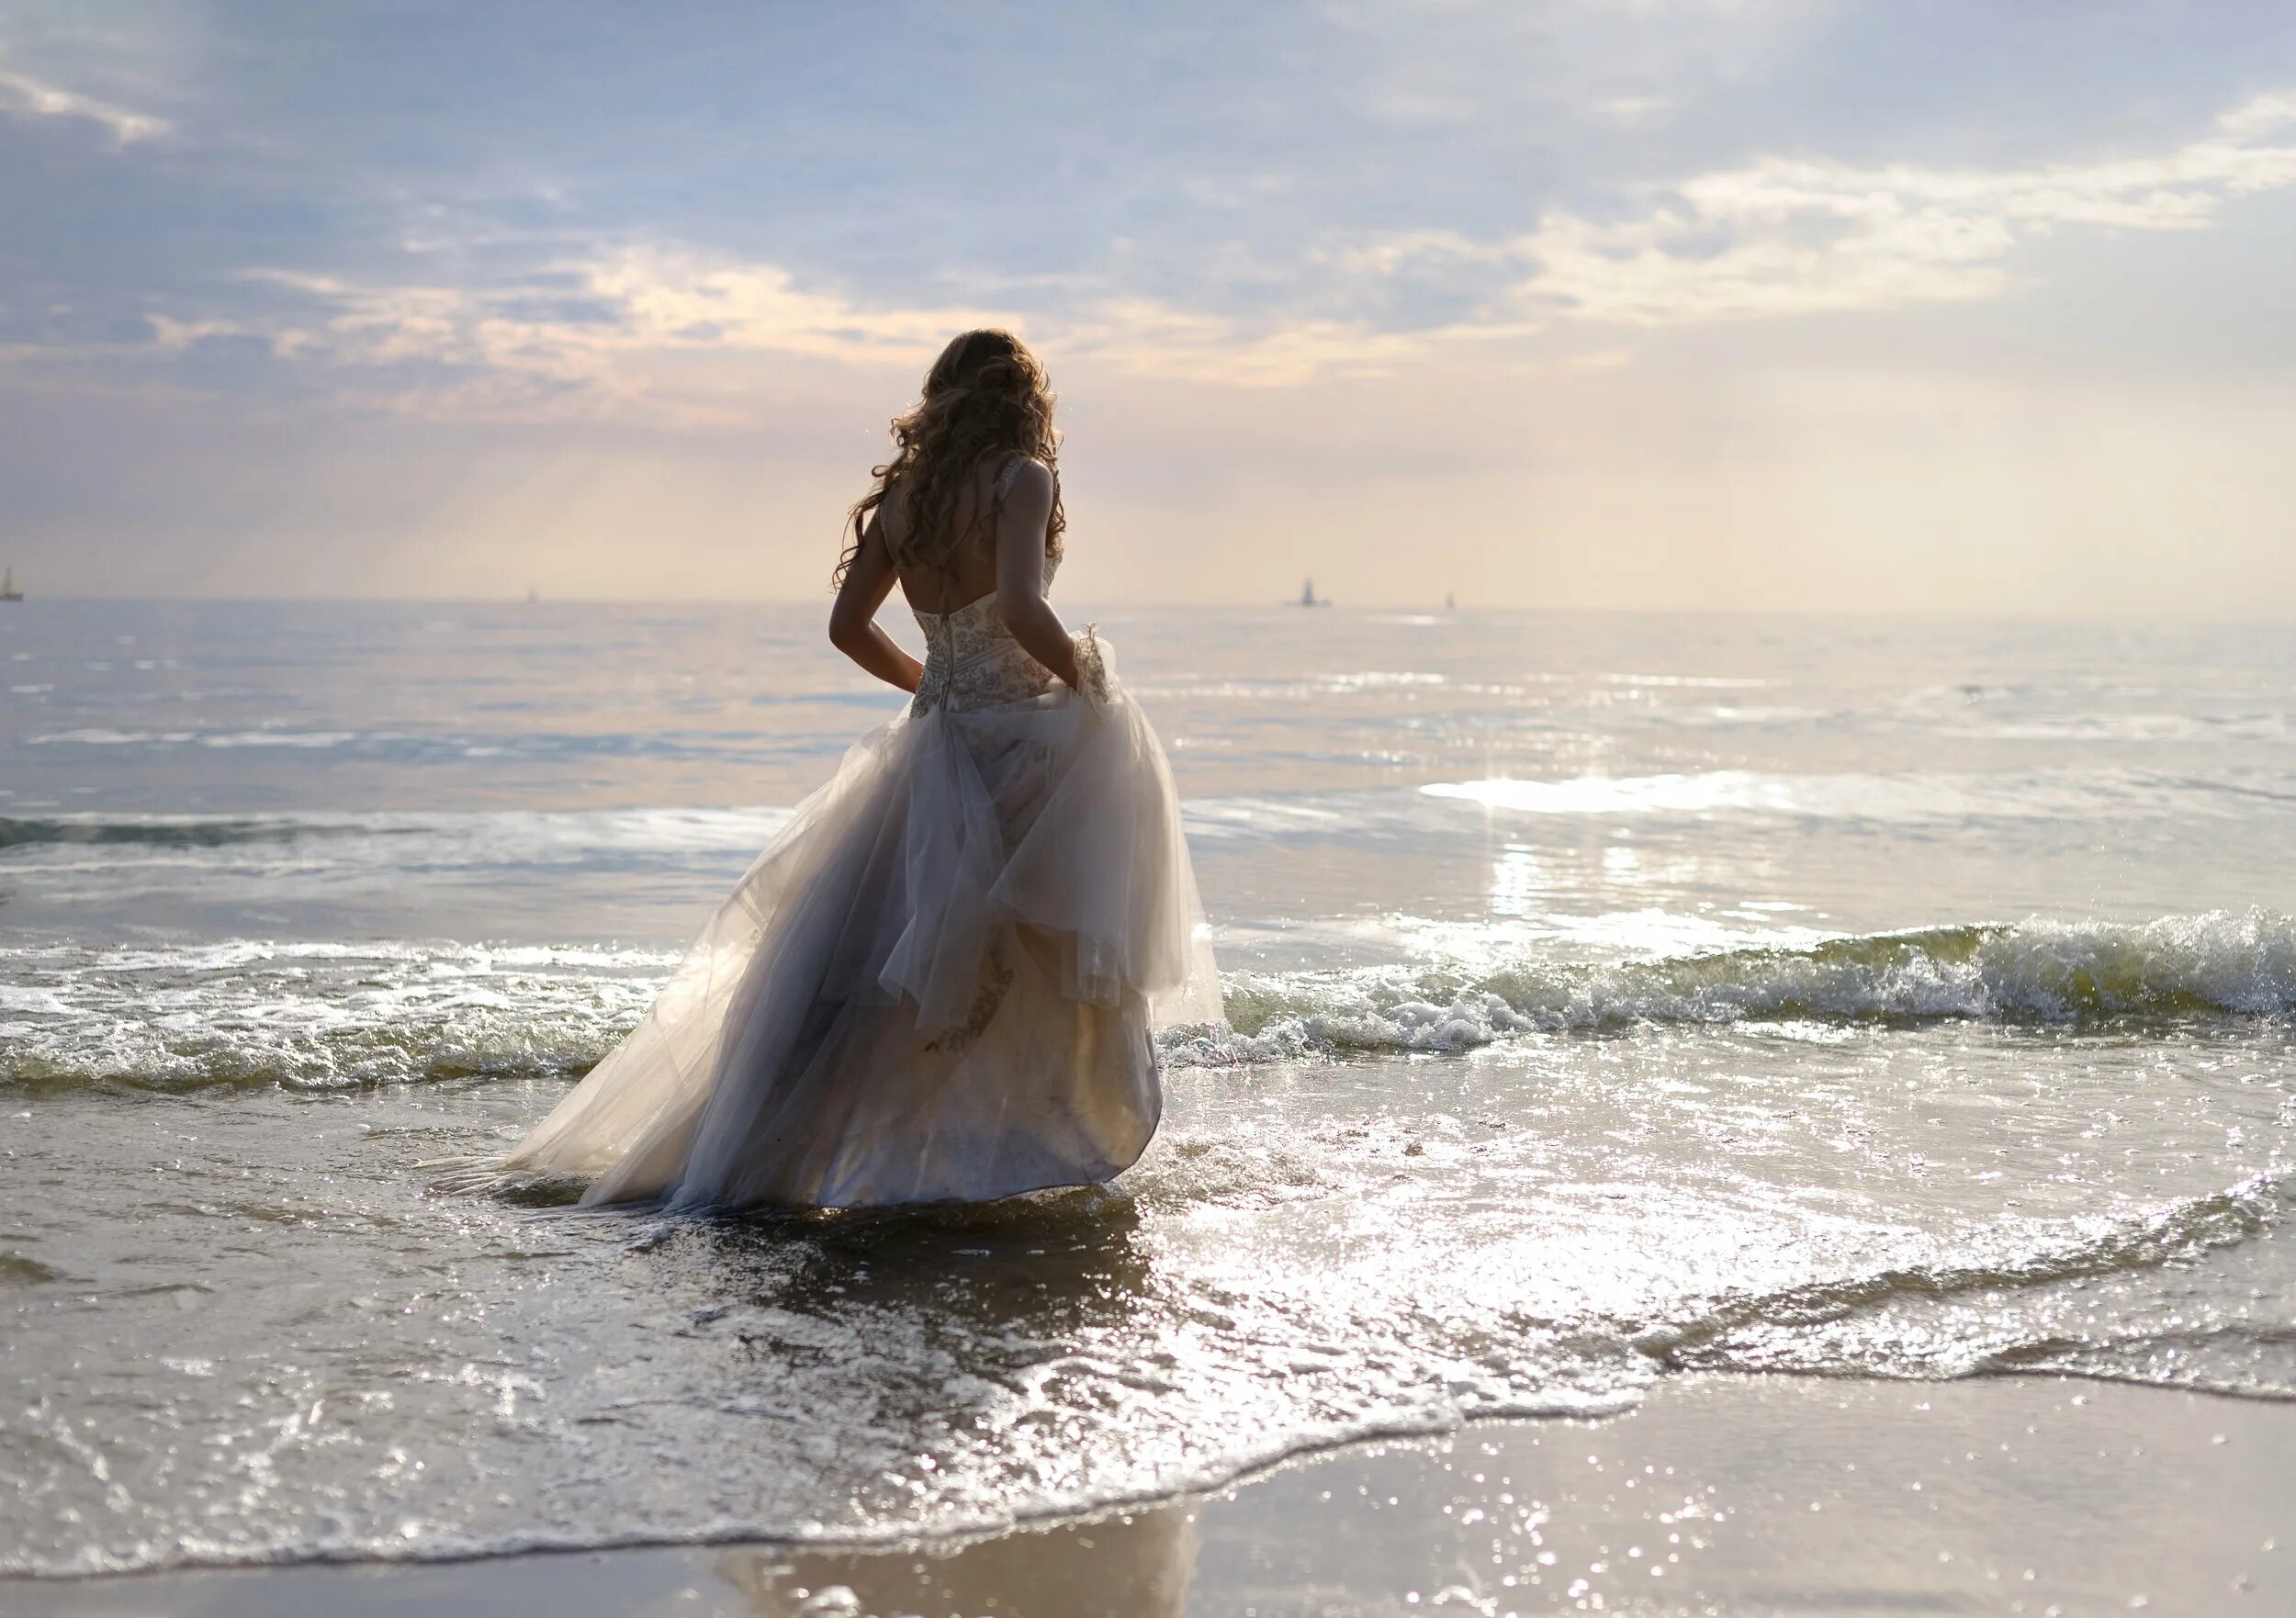 Она танцует в белом платье смотрит тайно. Девушка-море. Фотосессия на море. Красивые платья для девушек длинные.